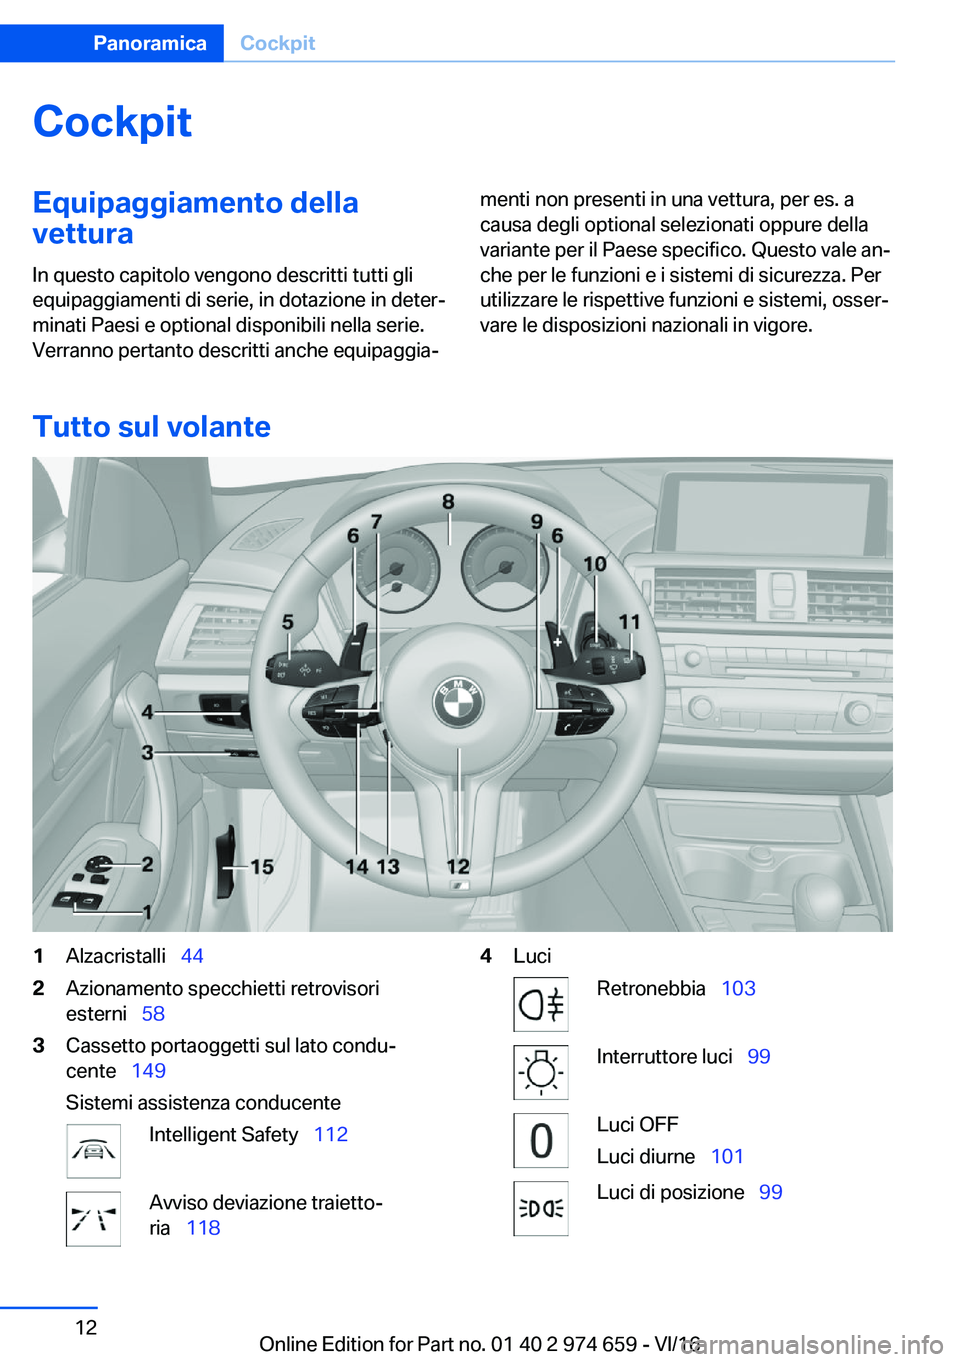 BMW M2 2017  Libretti Di Uso E manutenzione (in Italian) �C�o�c�k�p�i�t�E�q�u�i�p�a�g�g�i�a�m�e�n�t�o��d�e�l�l�a�v�e�t�t�u�r�a
�I�n� �q�u�e�s�t�o� �c�a�p�i�t�o�l�o� �v�e�n�g�o�n�o� �d�e�s�c�r�i�t�t�i� �t�u�t�t�i� �g�l�i �e�q�u�i�p�a�g�g�i�a�m�e�n�t�i� �d�i